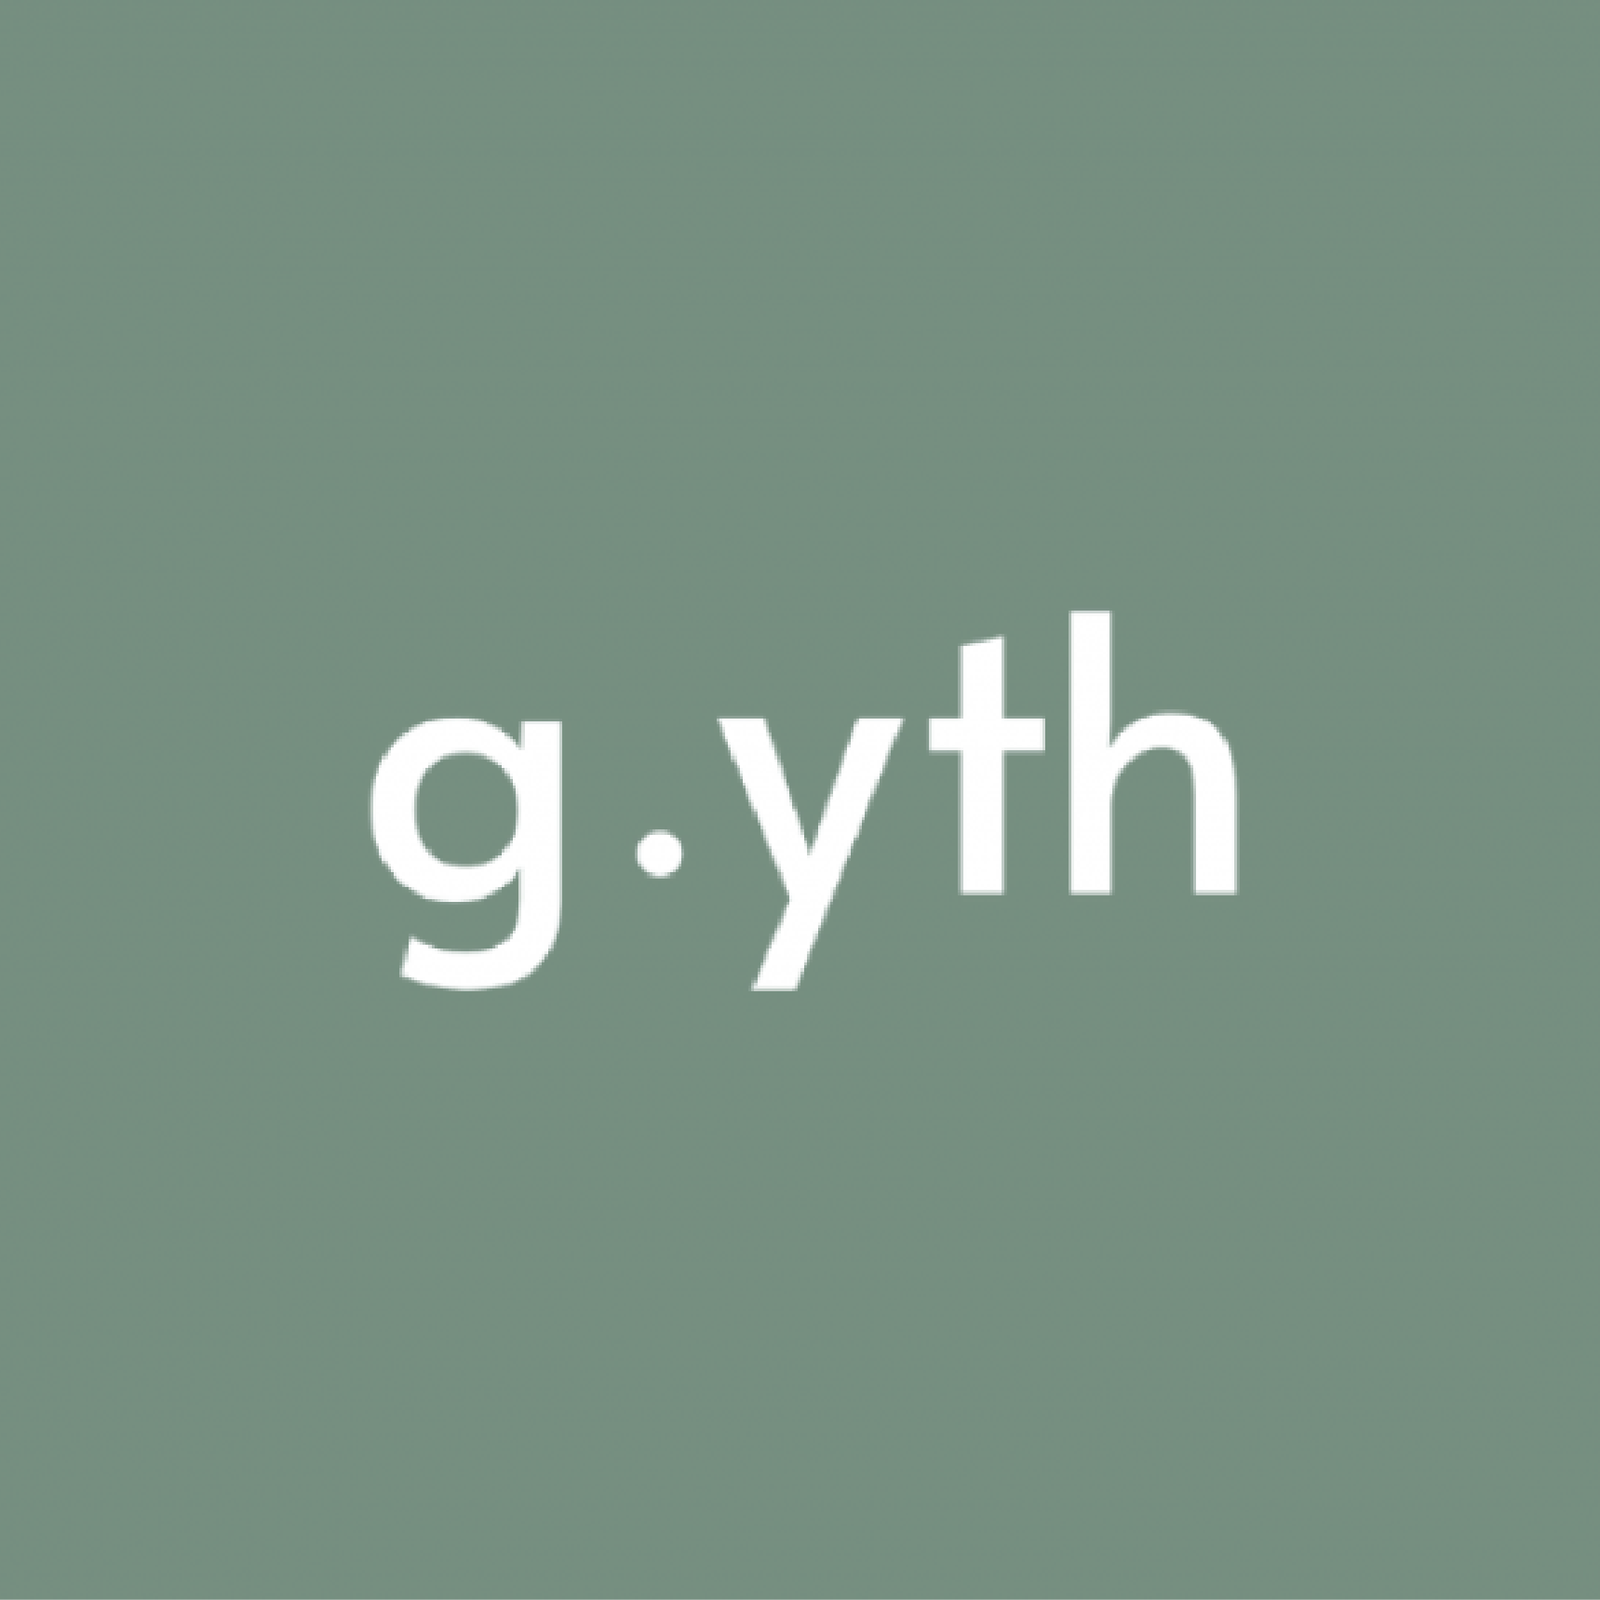 g.yth